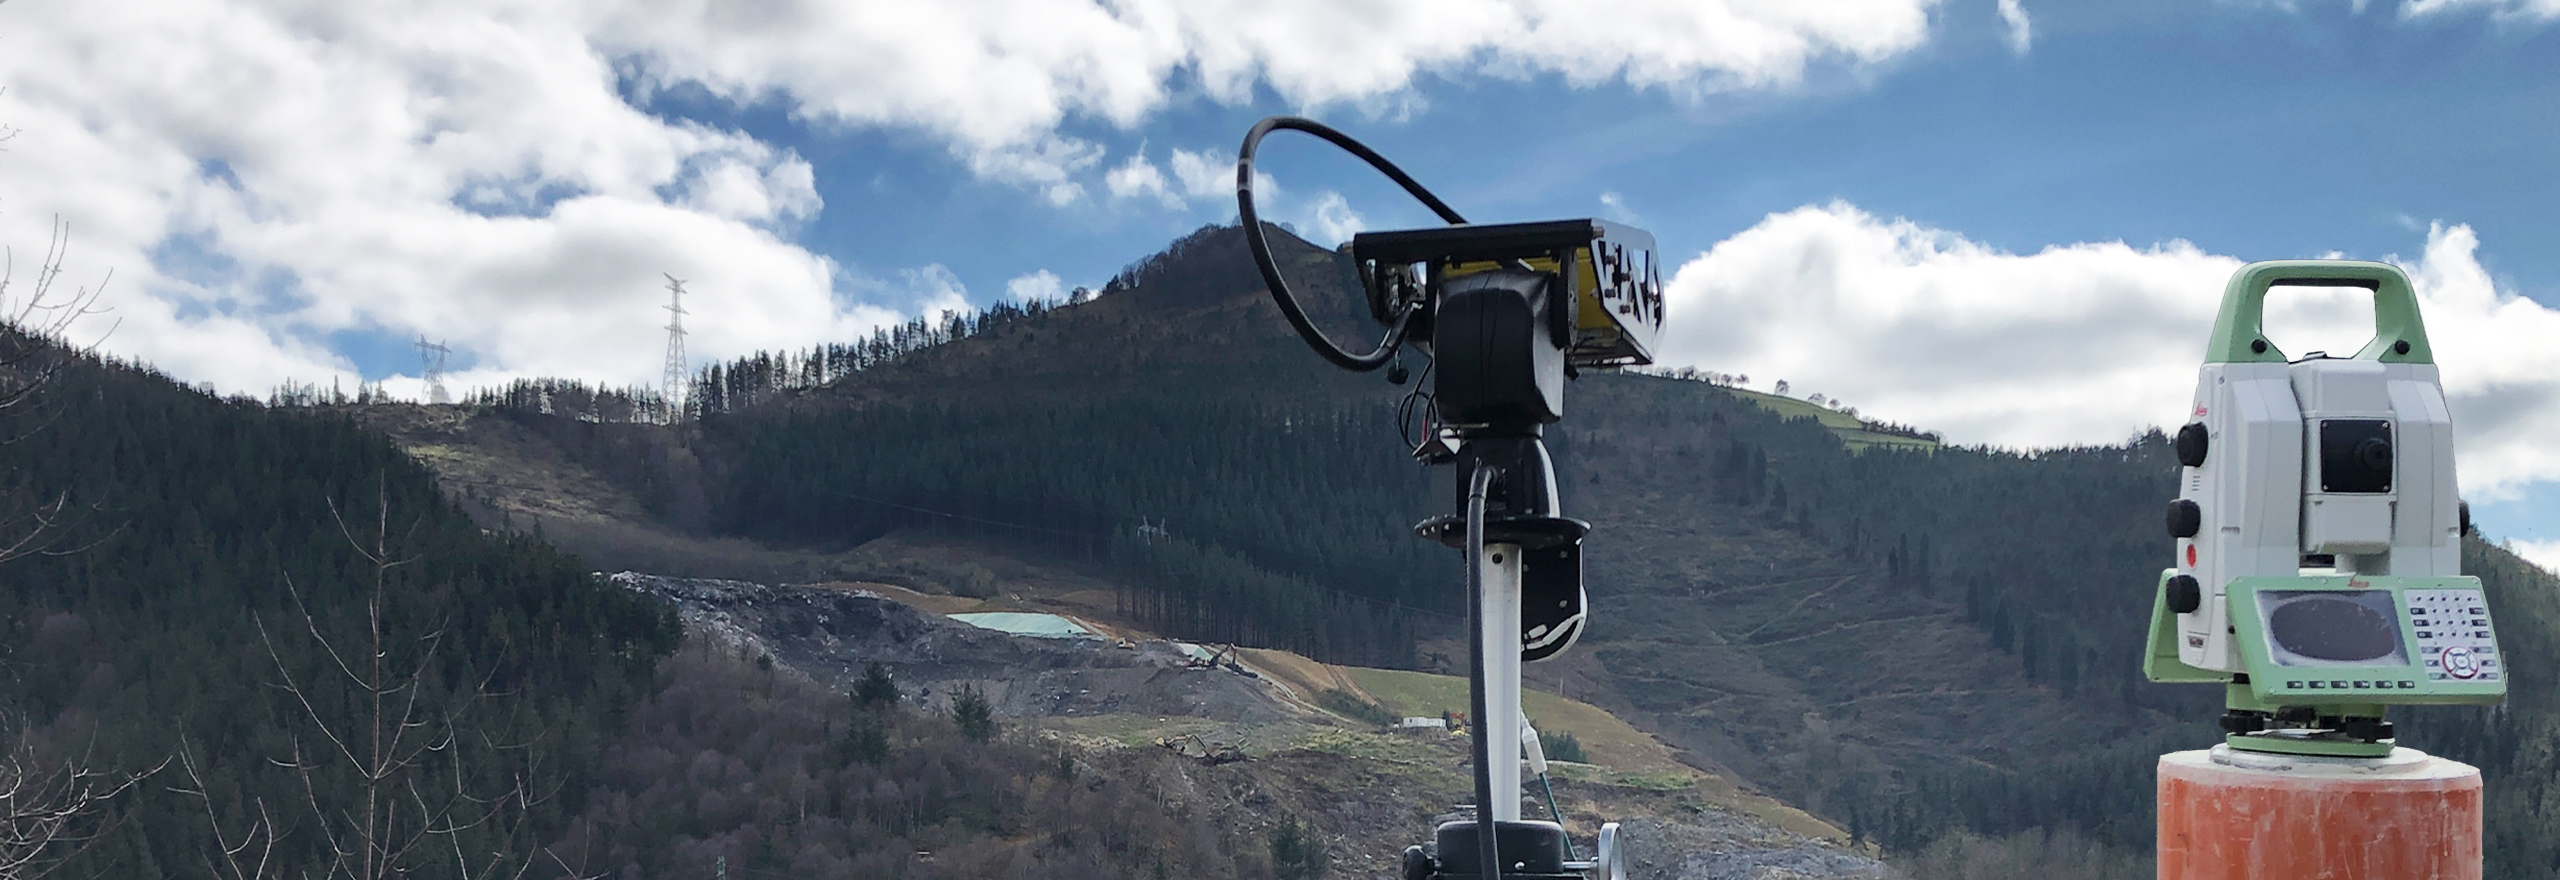 radar et station totale pour la surveillance des glissements de terrain environnementaux